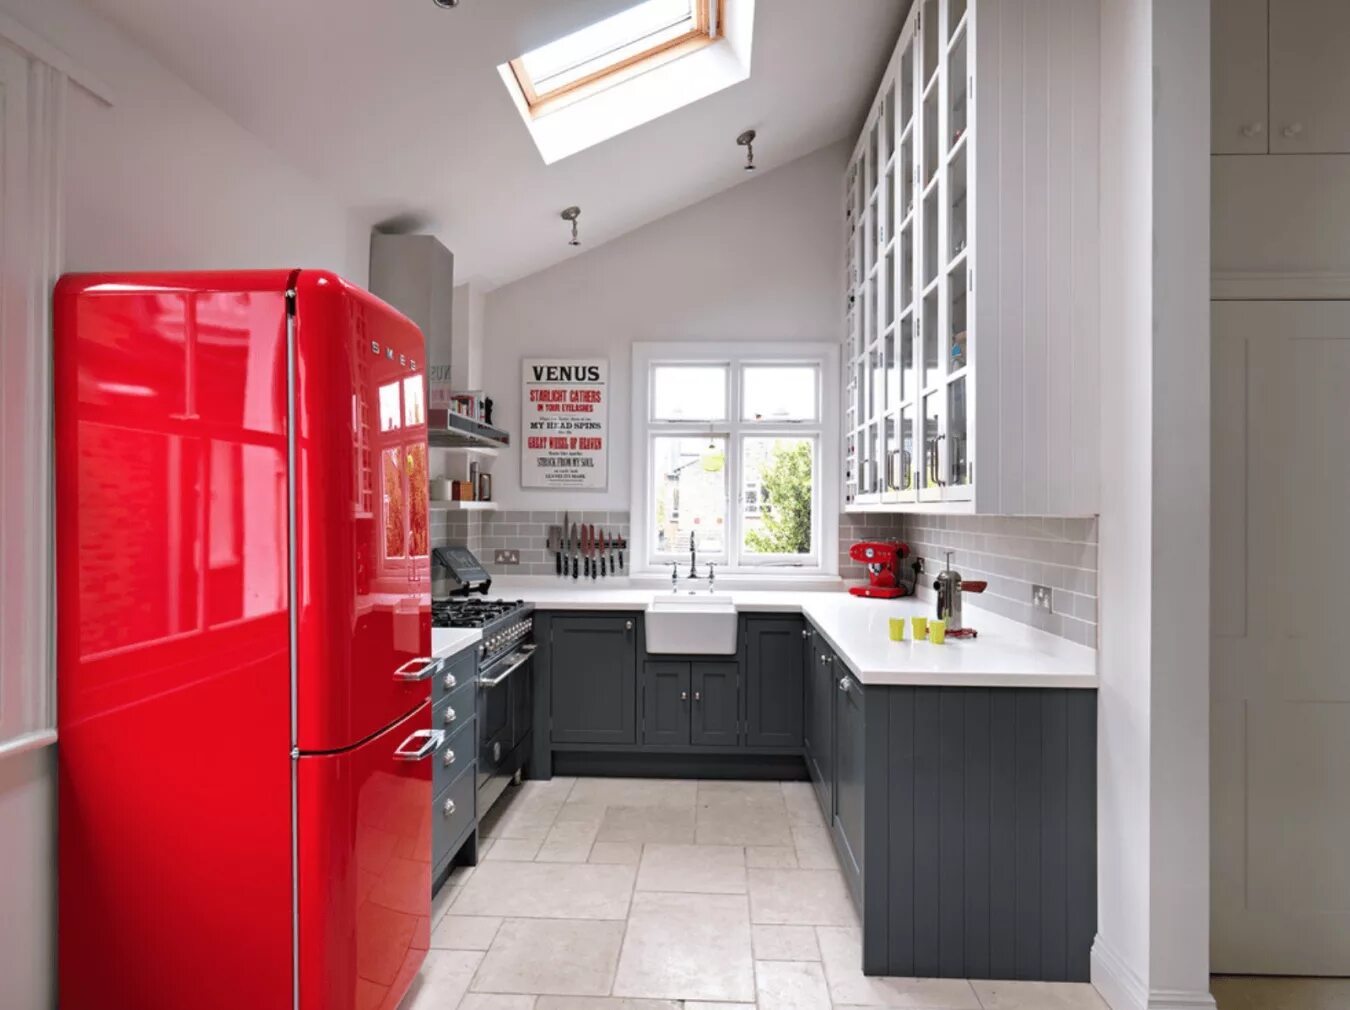 2 we in the kitchen. Красный холодильник в интерьере. Кухня с красным холодильником. Холодильник в интерьере. Необычная планировка кухни.